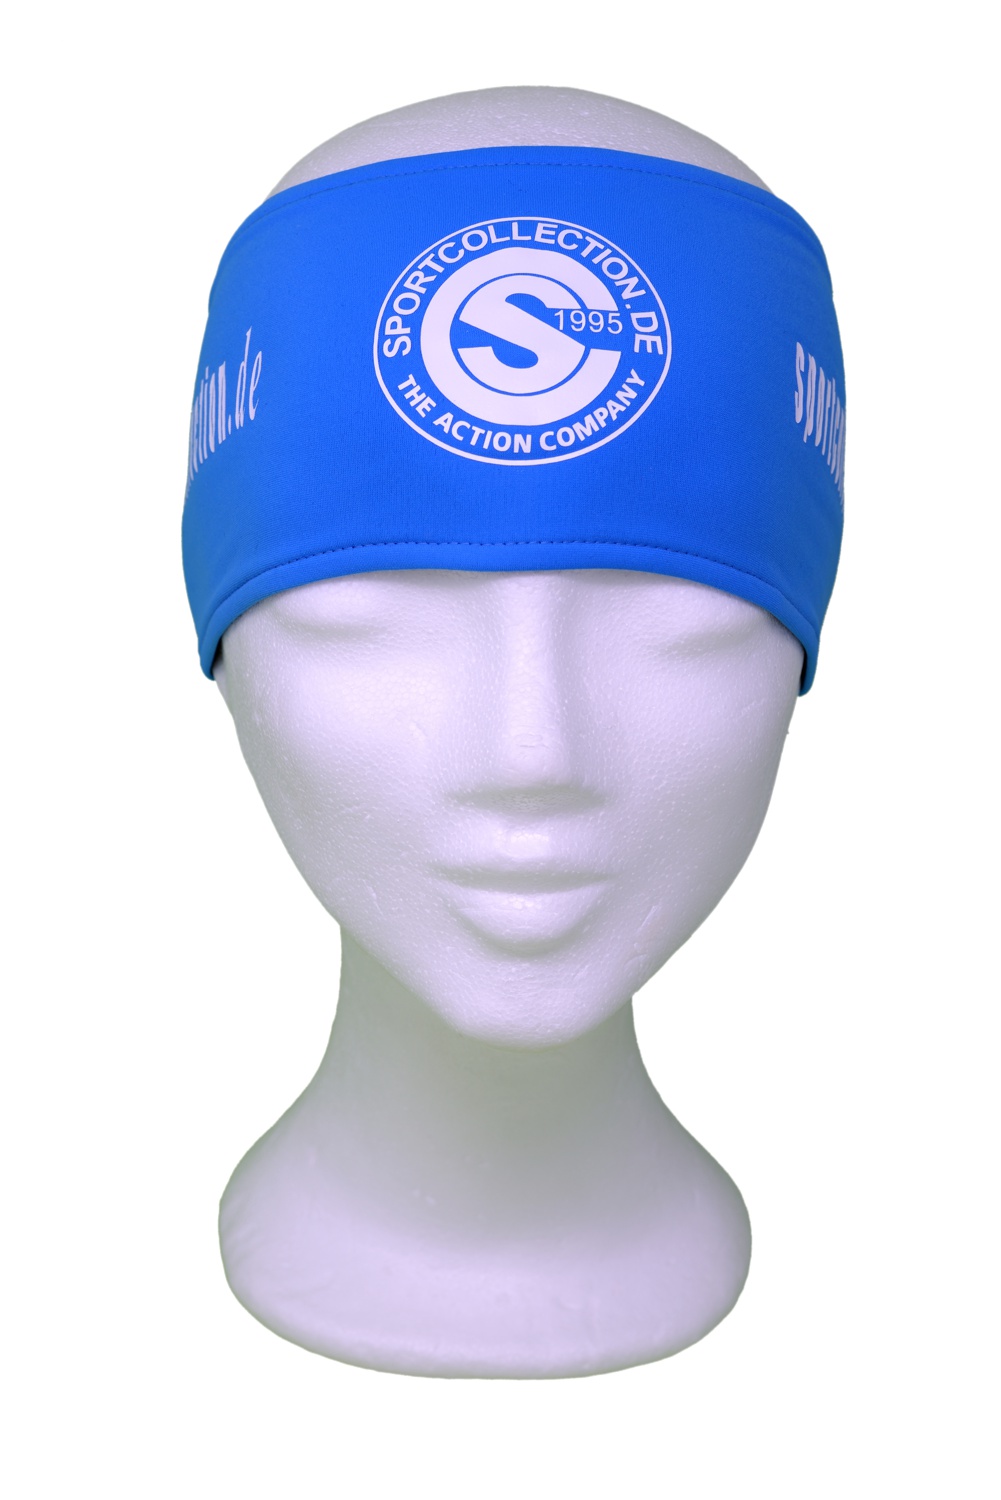 Stöhr Stirnband Blau-Weiß-Logo-Text